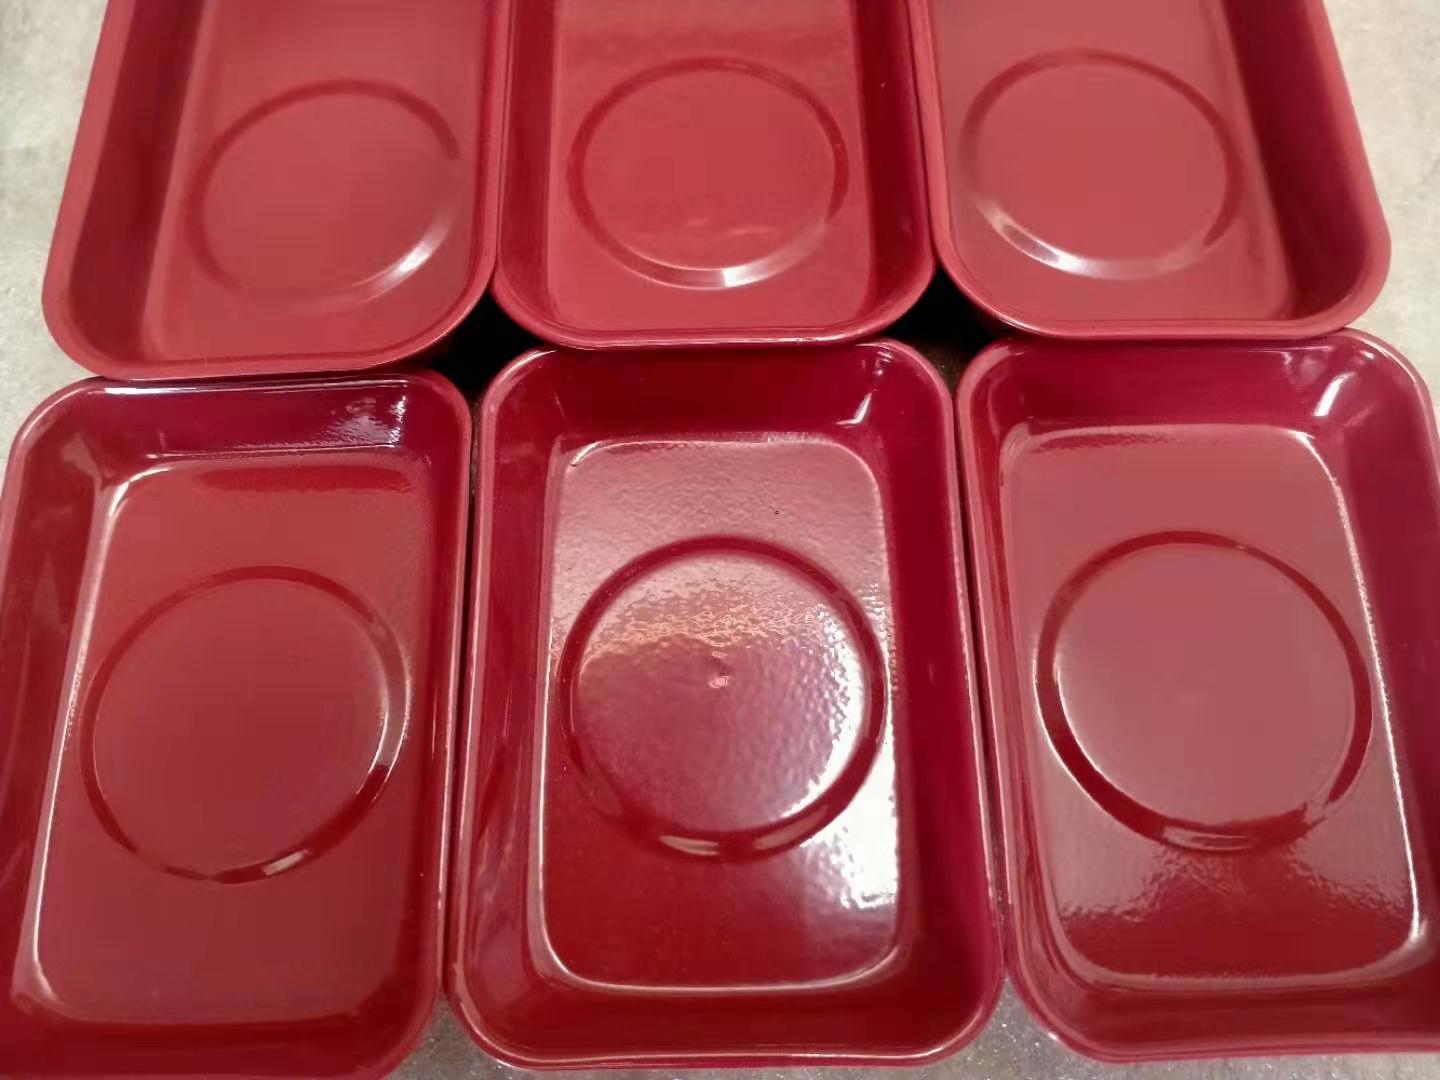 红色喷塑磁性收纳碗 汽保机修磁力盘 底部装配磁铁 网上热销磁碗 可以牢牢吸附在铁制品上在倒挂状态磁碗和小零件都不会滑落4